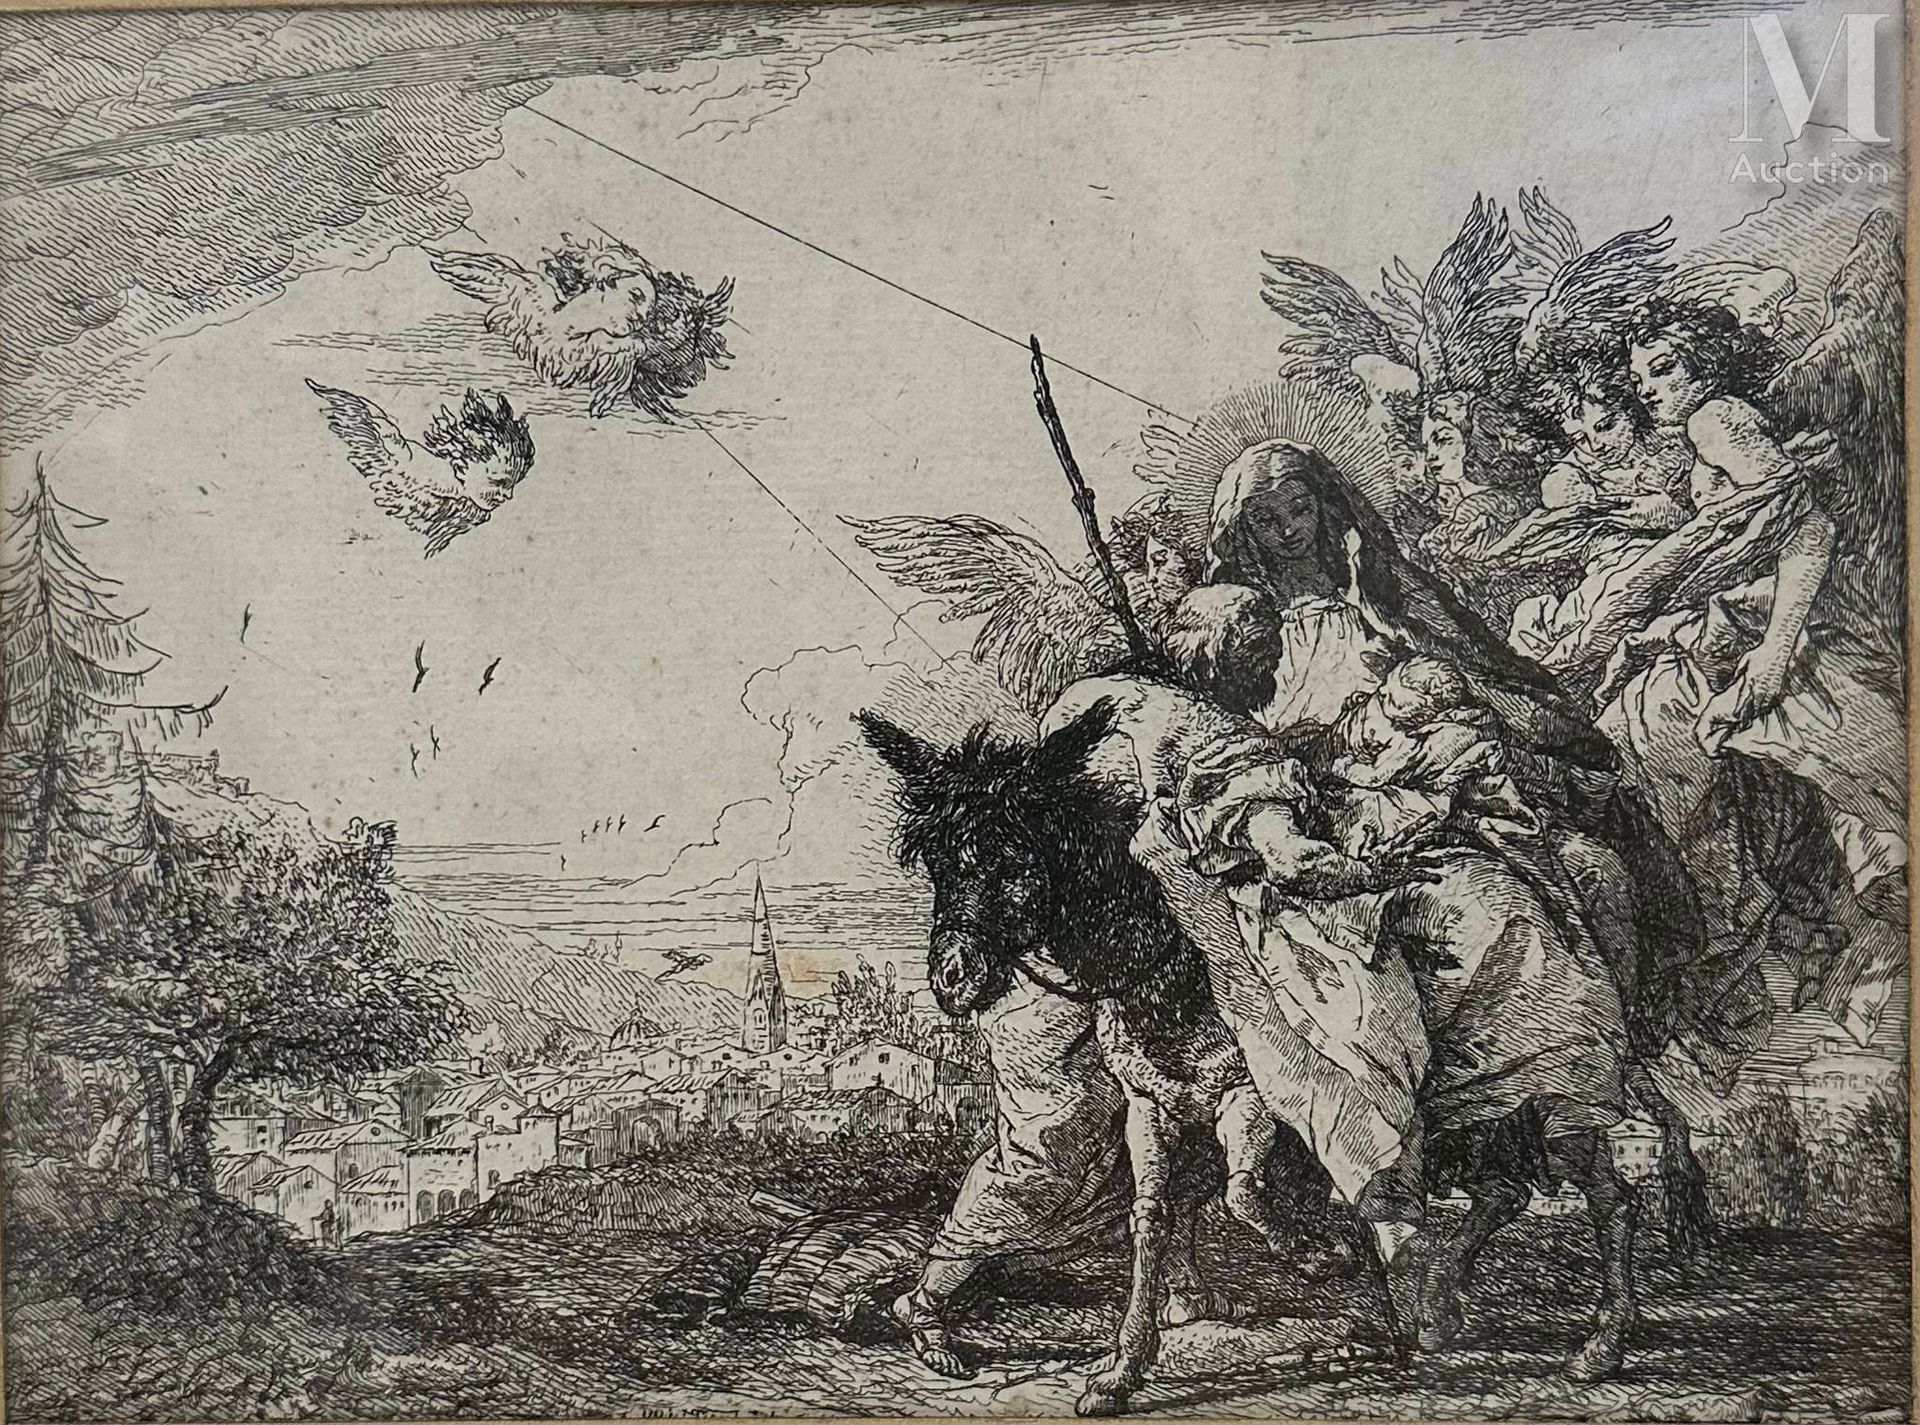 Giovanni Domenico TIEPOLO (1727-1804) "埃及的坑道思想 "第9版。
蚀刻
17,5 x 23,3 cm at sight